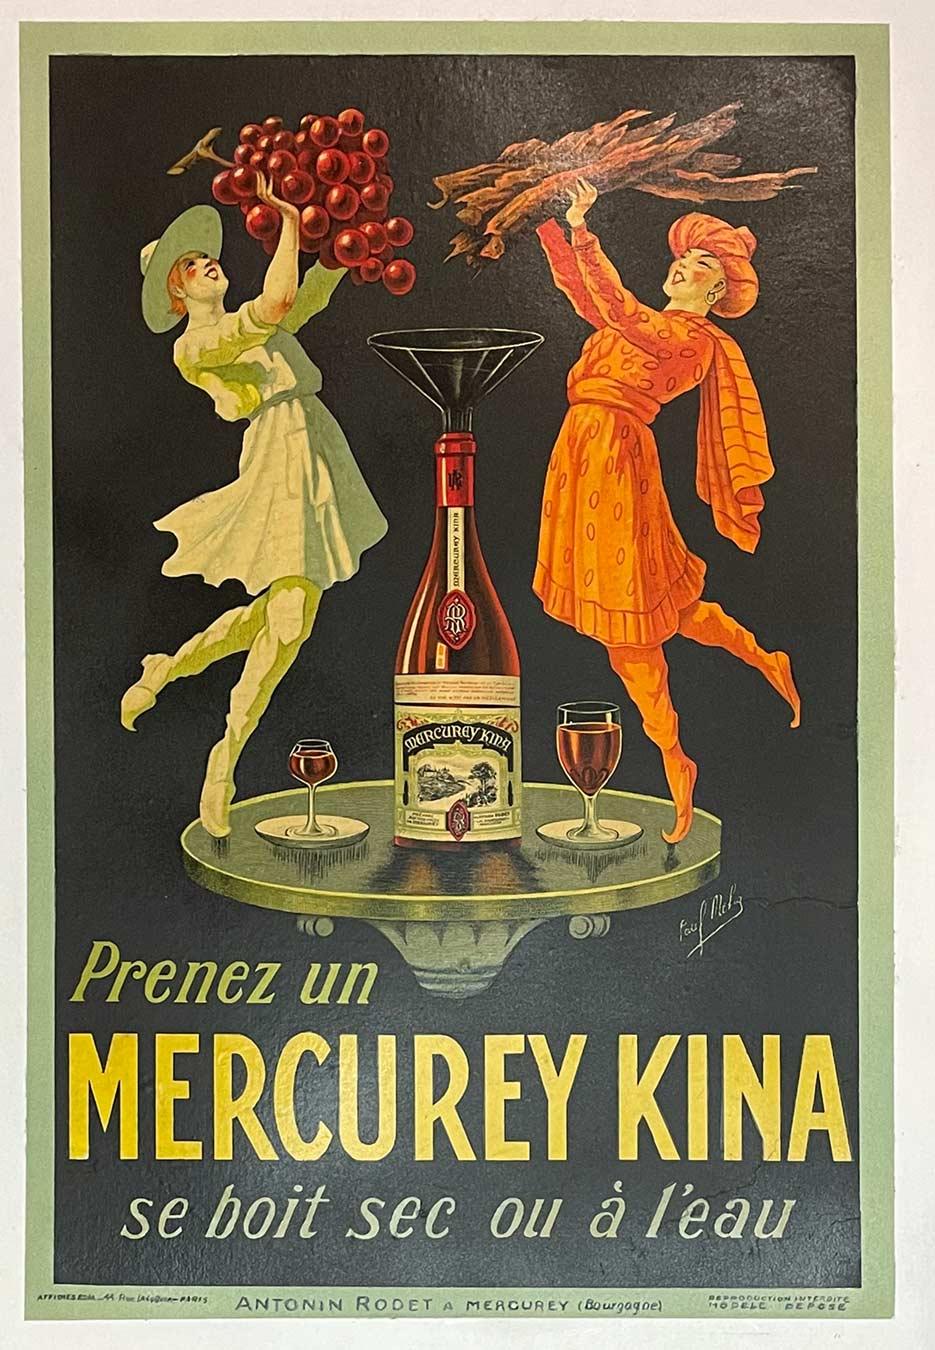 Paul Mohr Print - Original "Mercurey Kina" art deco vintage poster lithograph